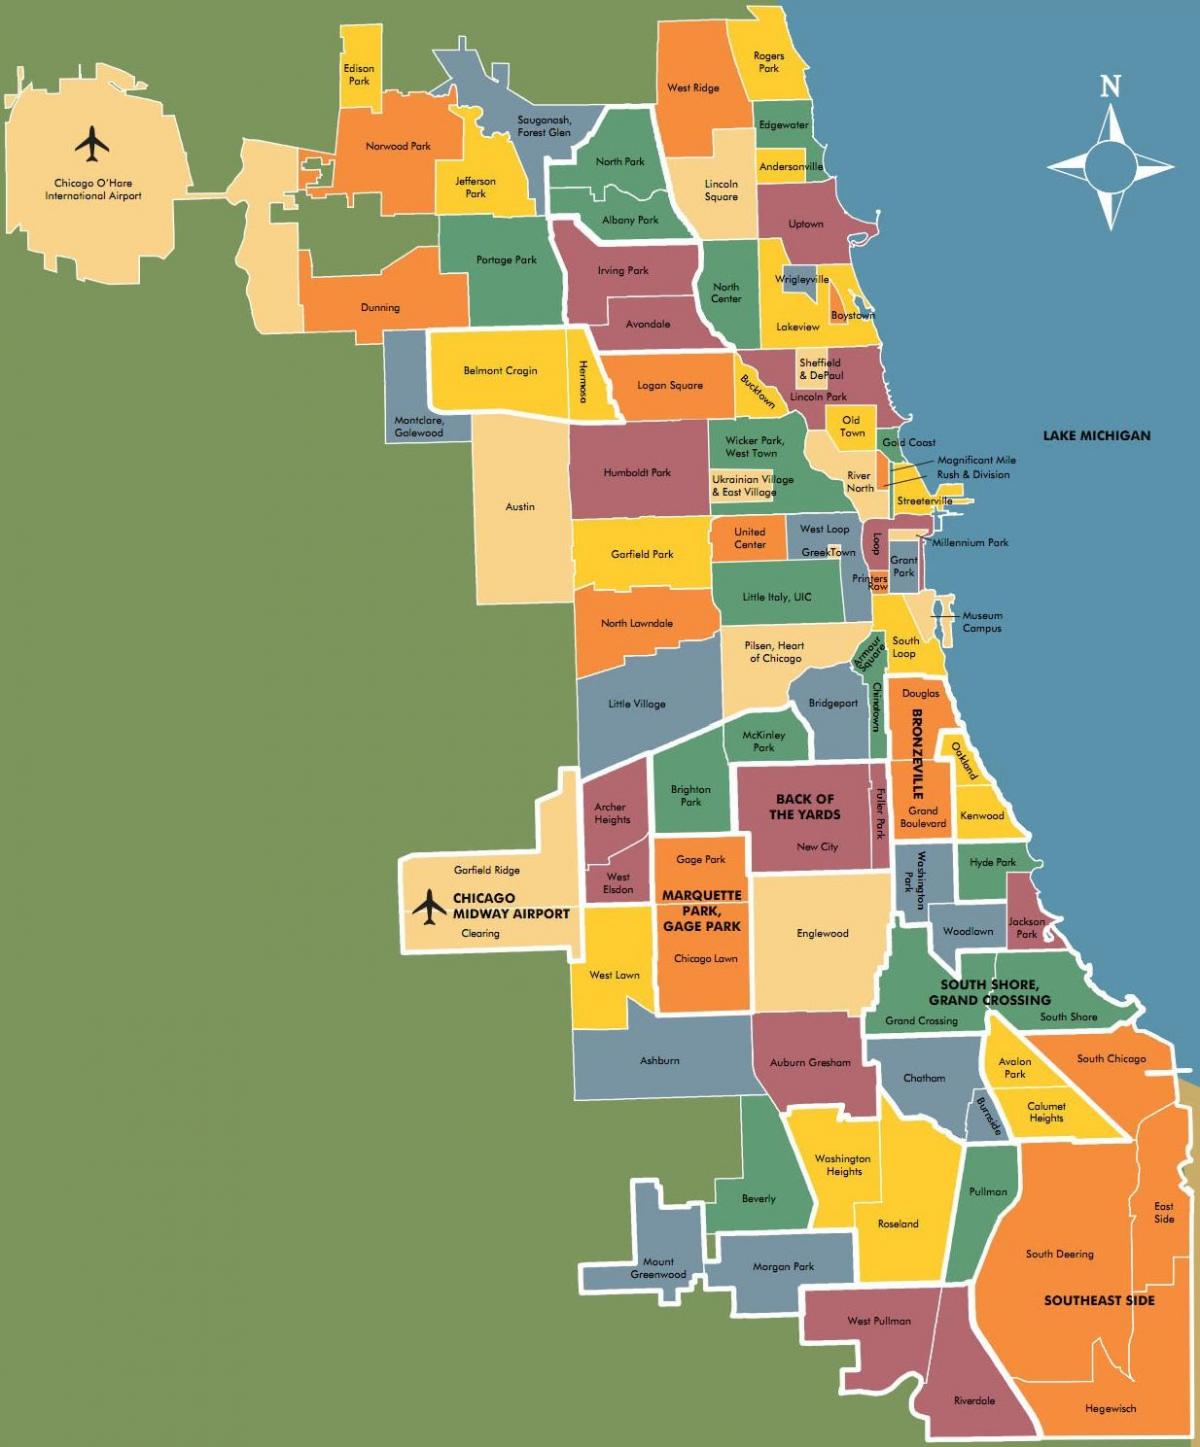 χάρτης της γειτονιές στο Σικάγο